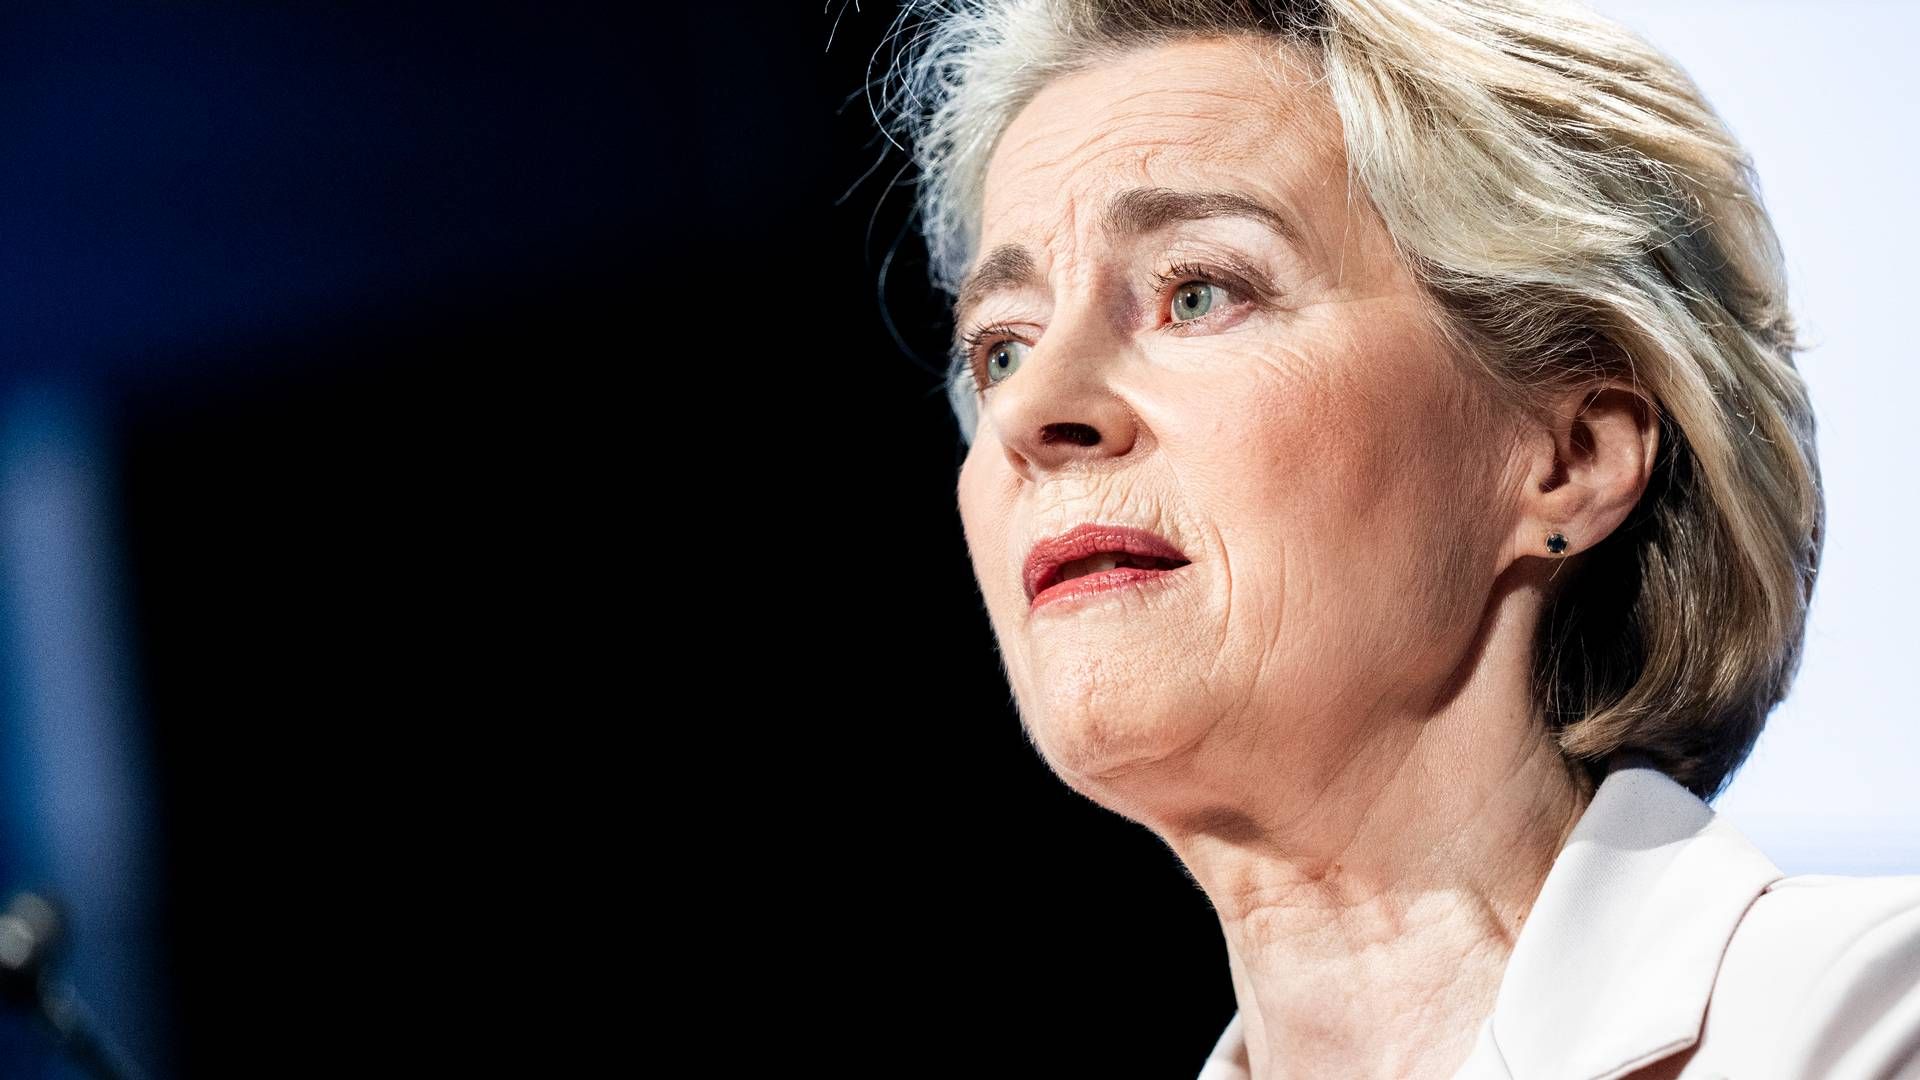 Sagens forlængelse kommer efter en belgisk lobbyist i april anklagede Ursula von der Leyen for "ødelæggelse af offentlige dokumenter, ulovlig interessevaretagelse og korruption”. (ARKIV) | Foto: Ida Marie Odgaard